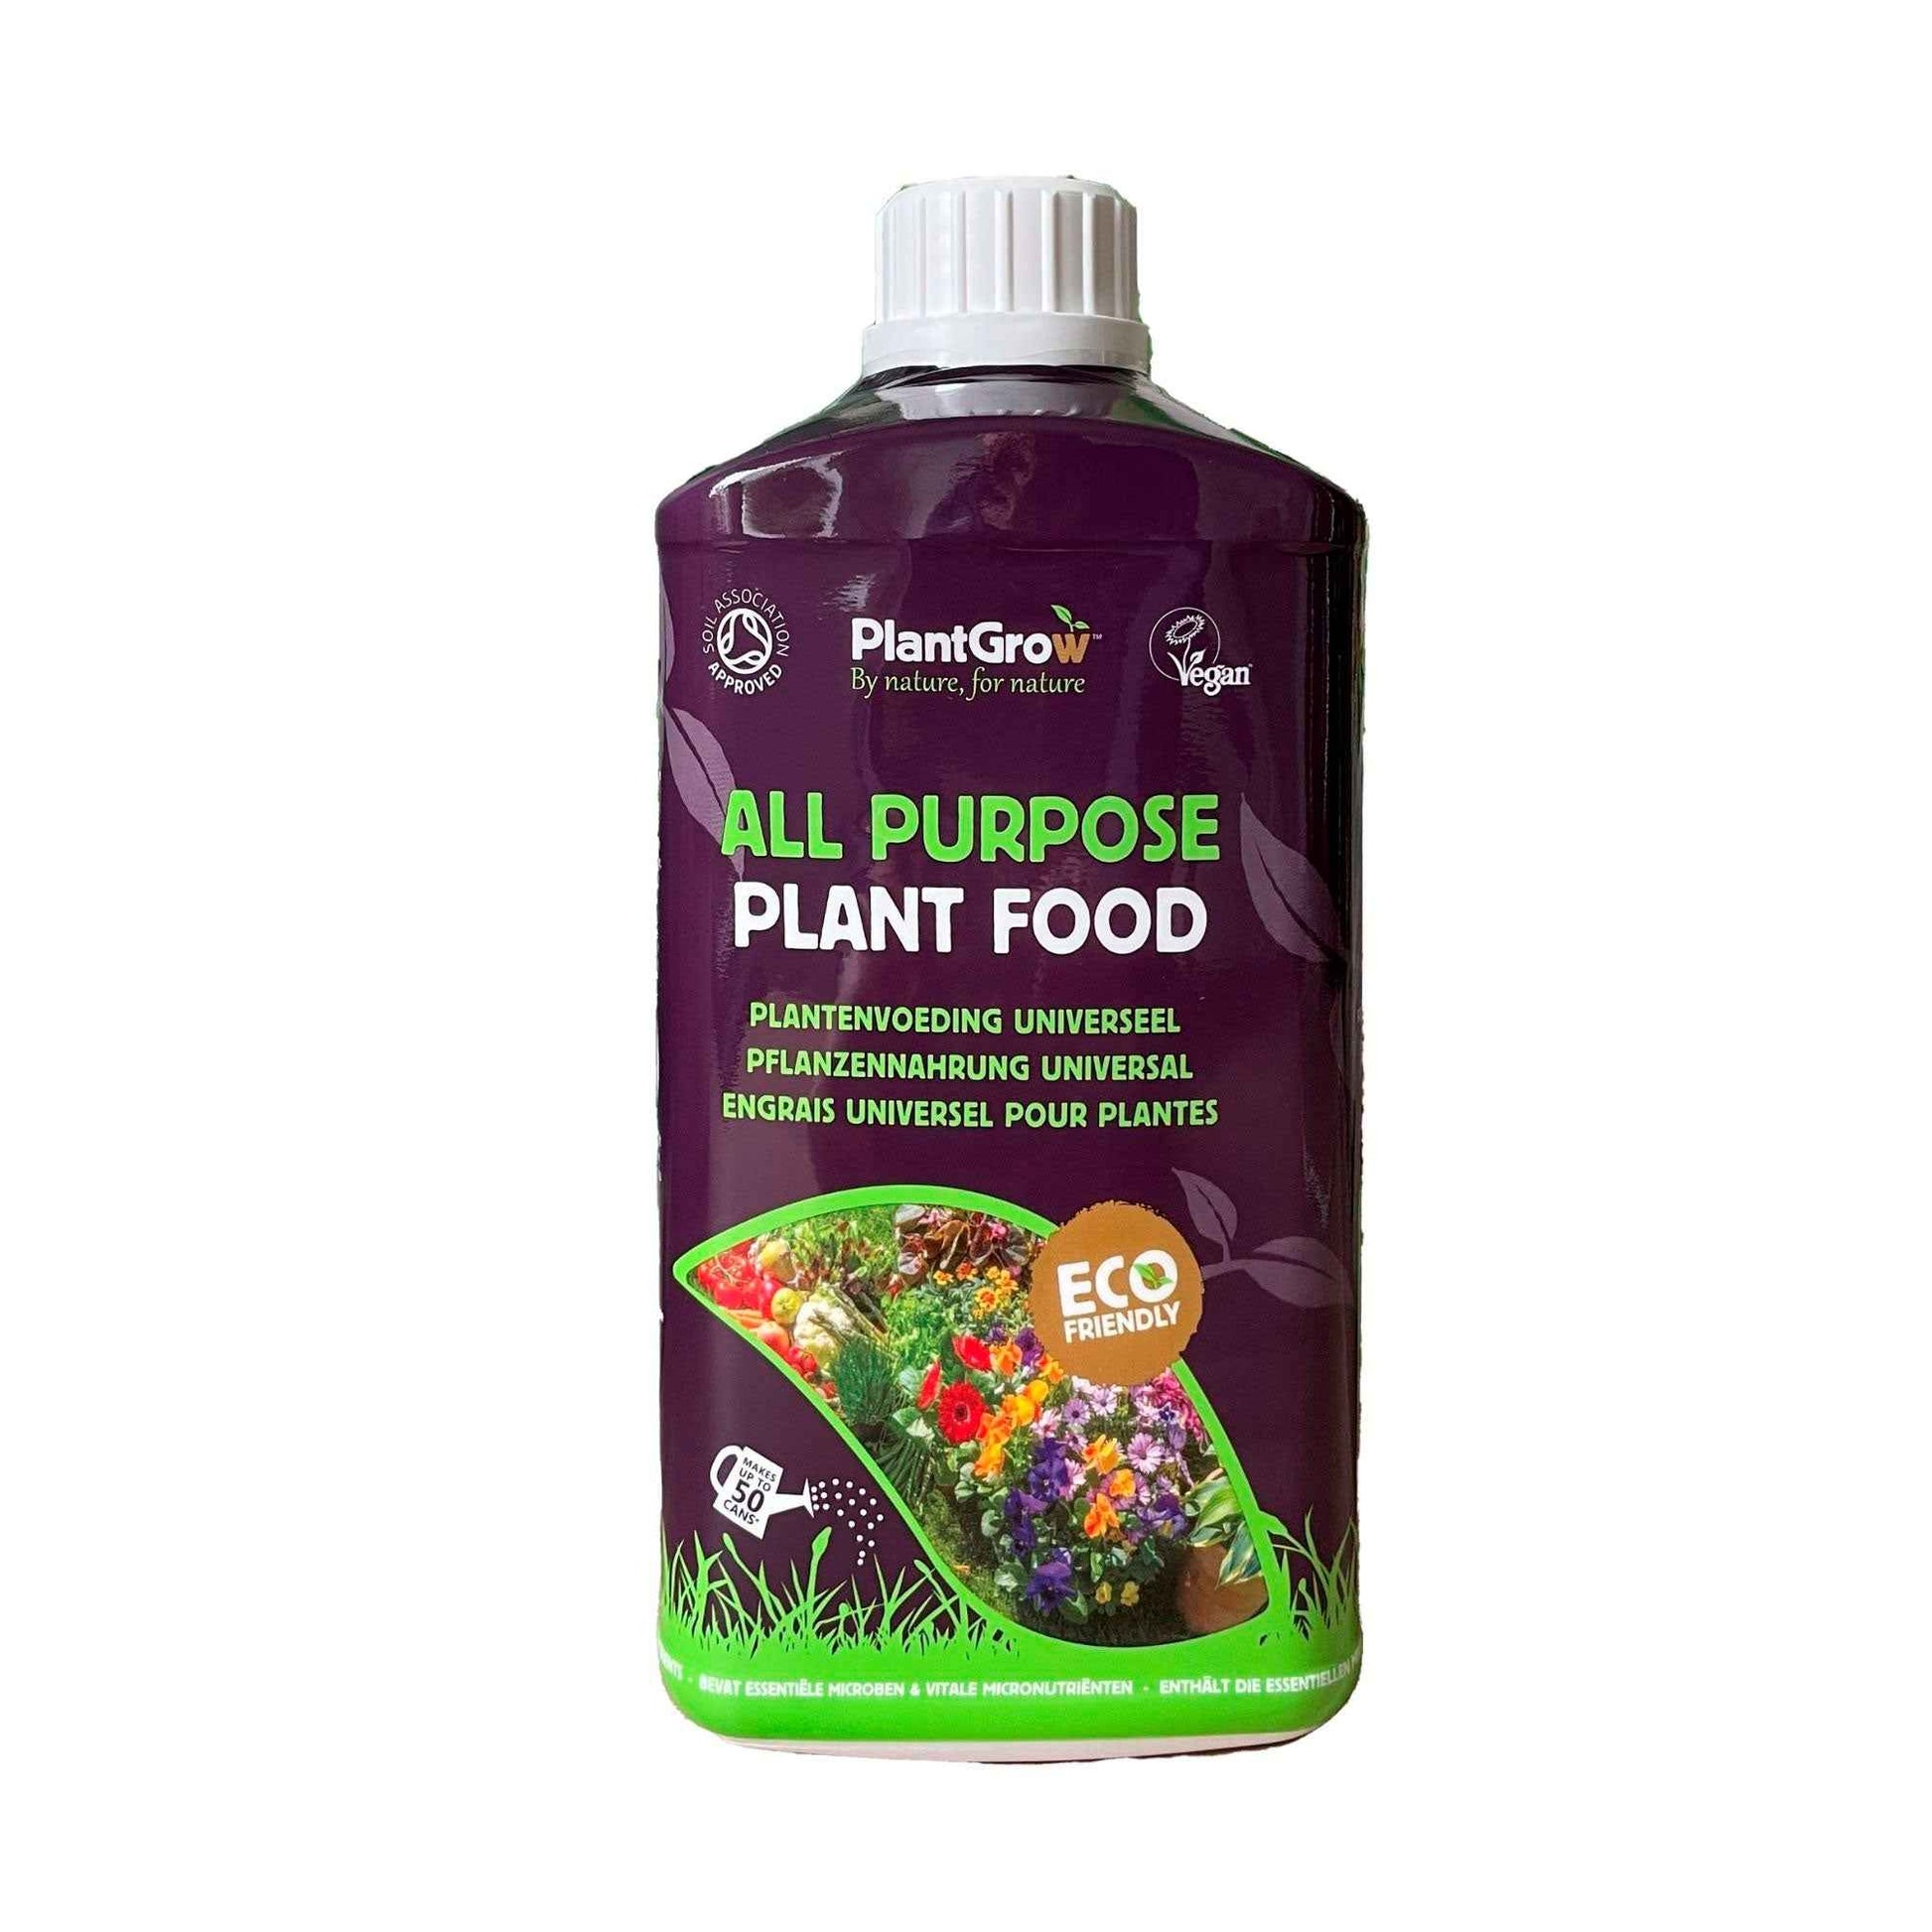 PlantGrow 100% natürliche Pflanzennahrung 1 L - Biologische Pflanzennahrung